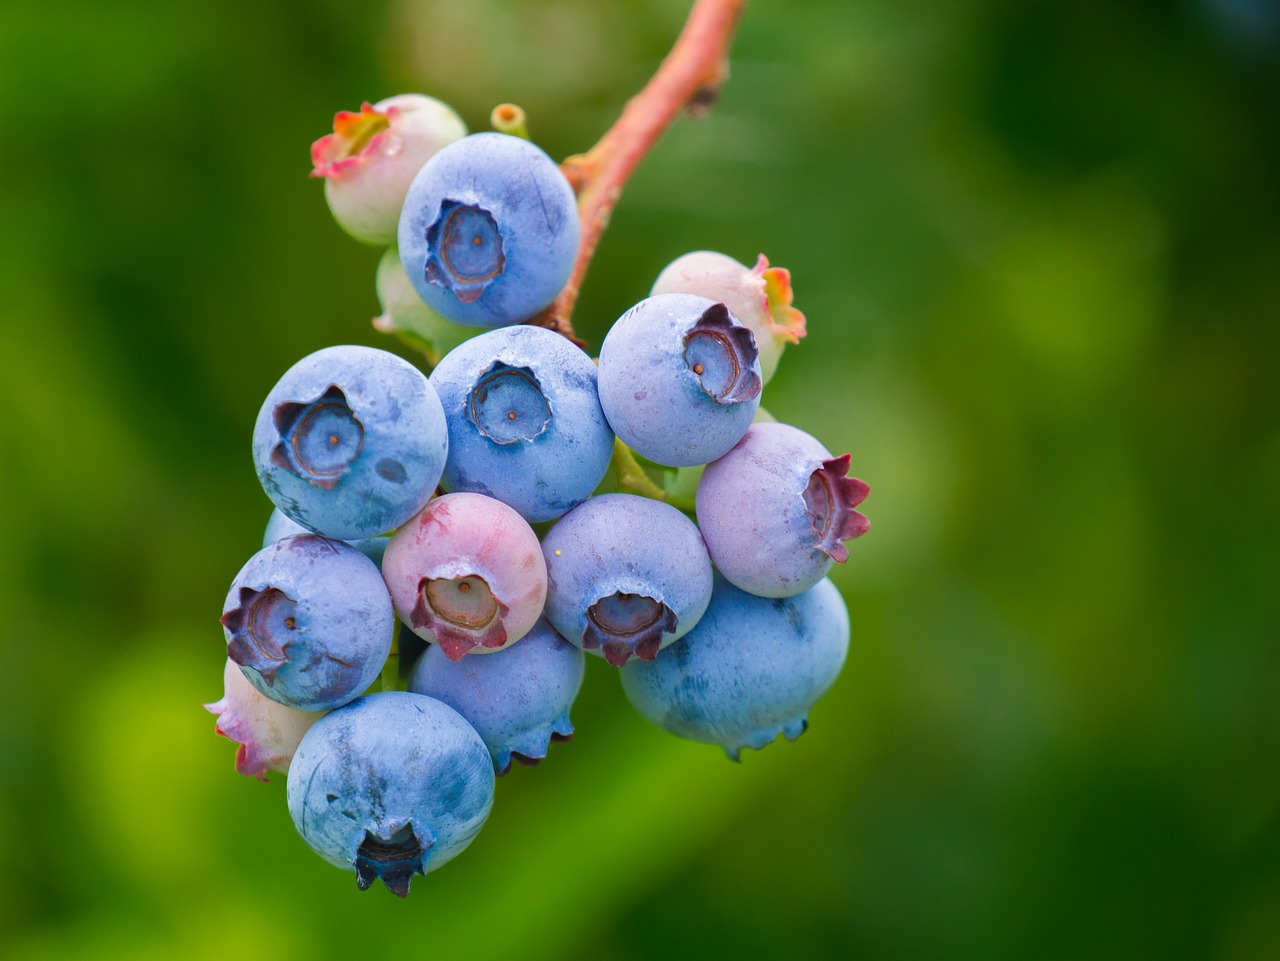 浆果, 蓝莓, 食品